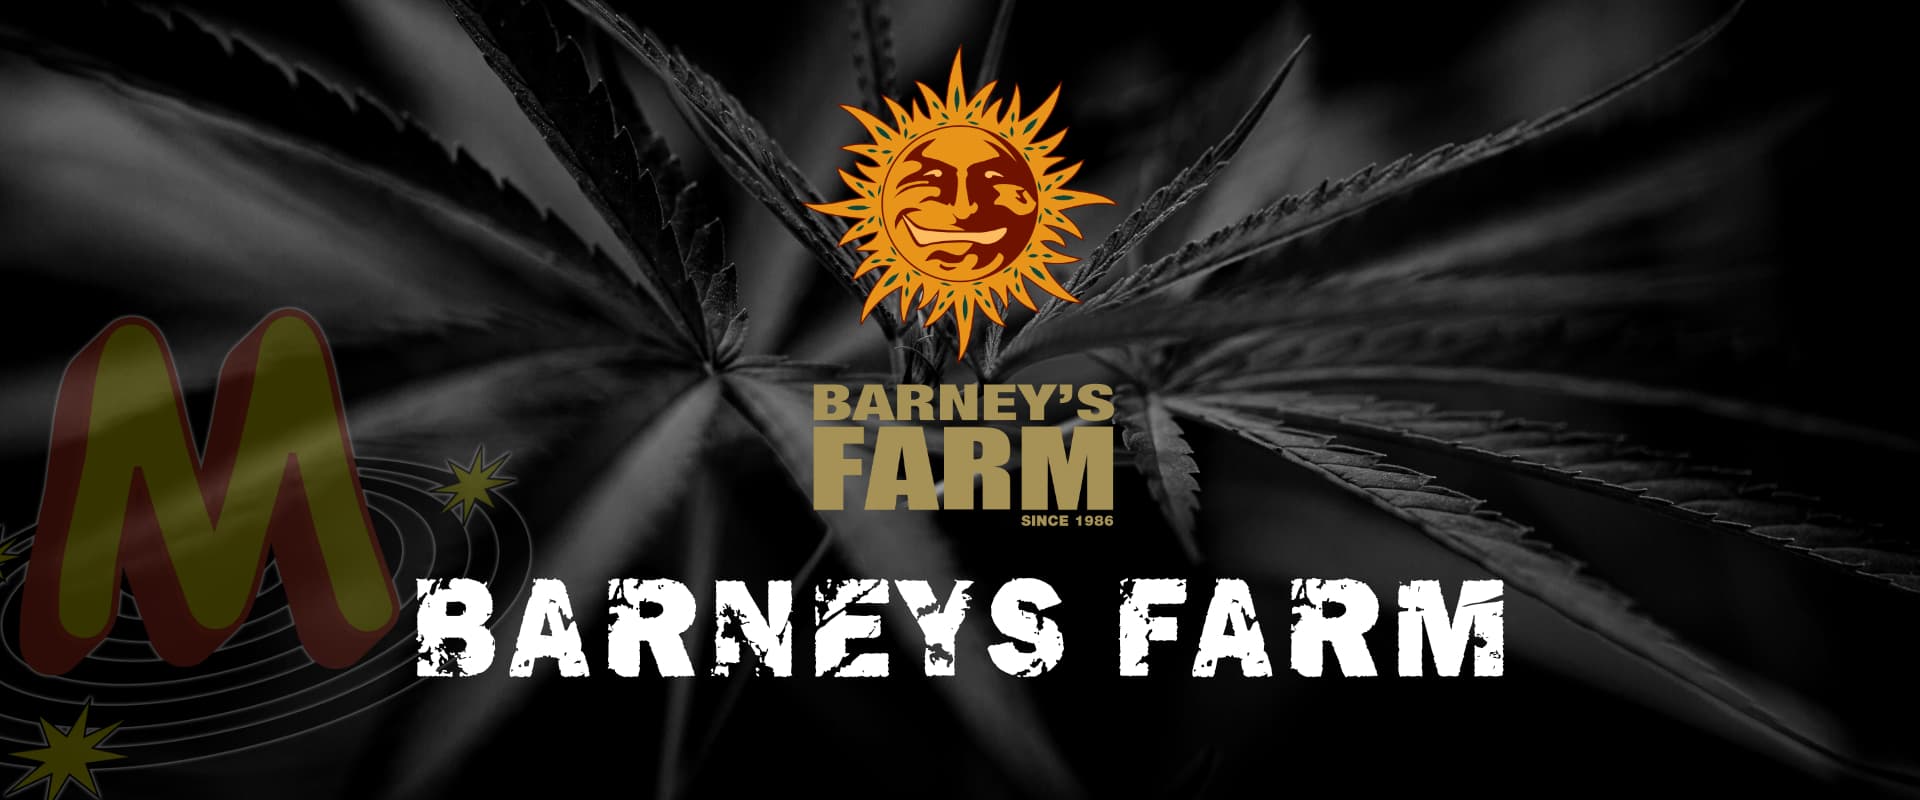 barneys_farm_banner_seeds